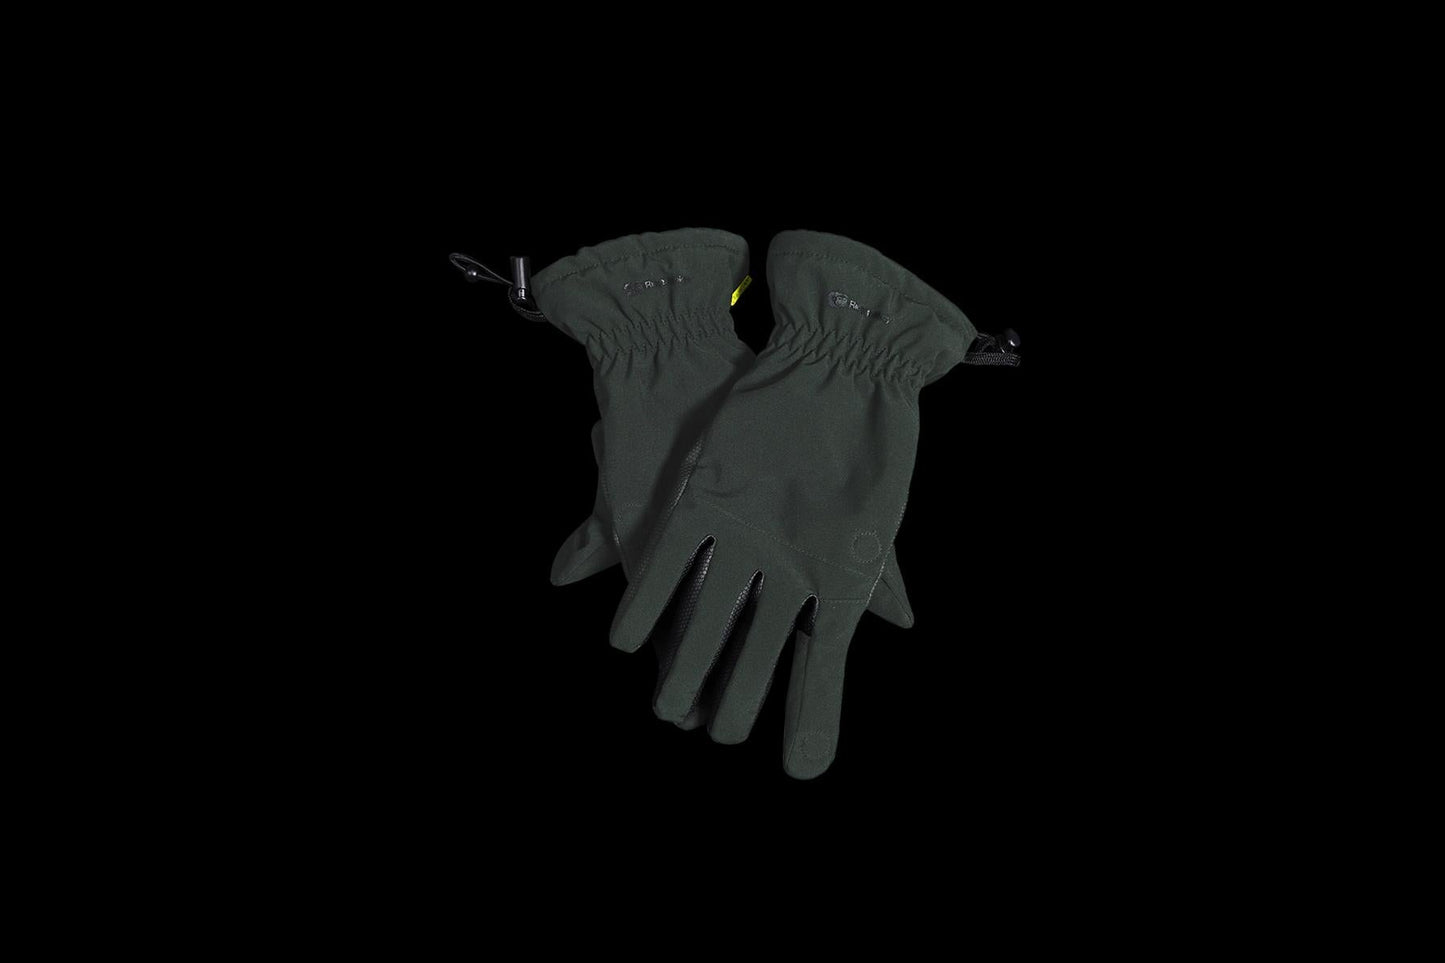 RidgeMonkey APEarel K2XP Tactical Gloves